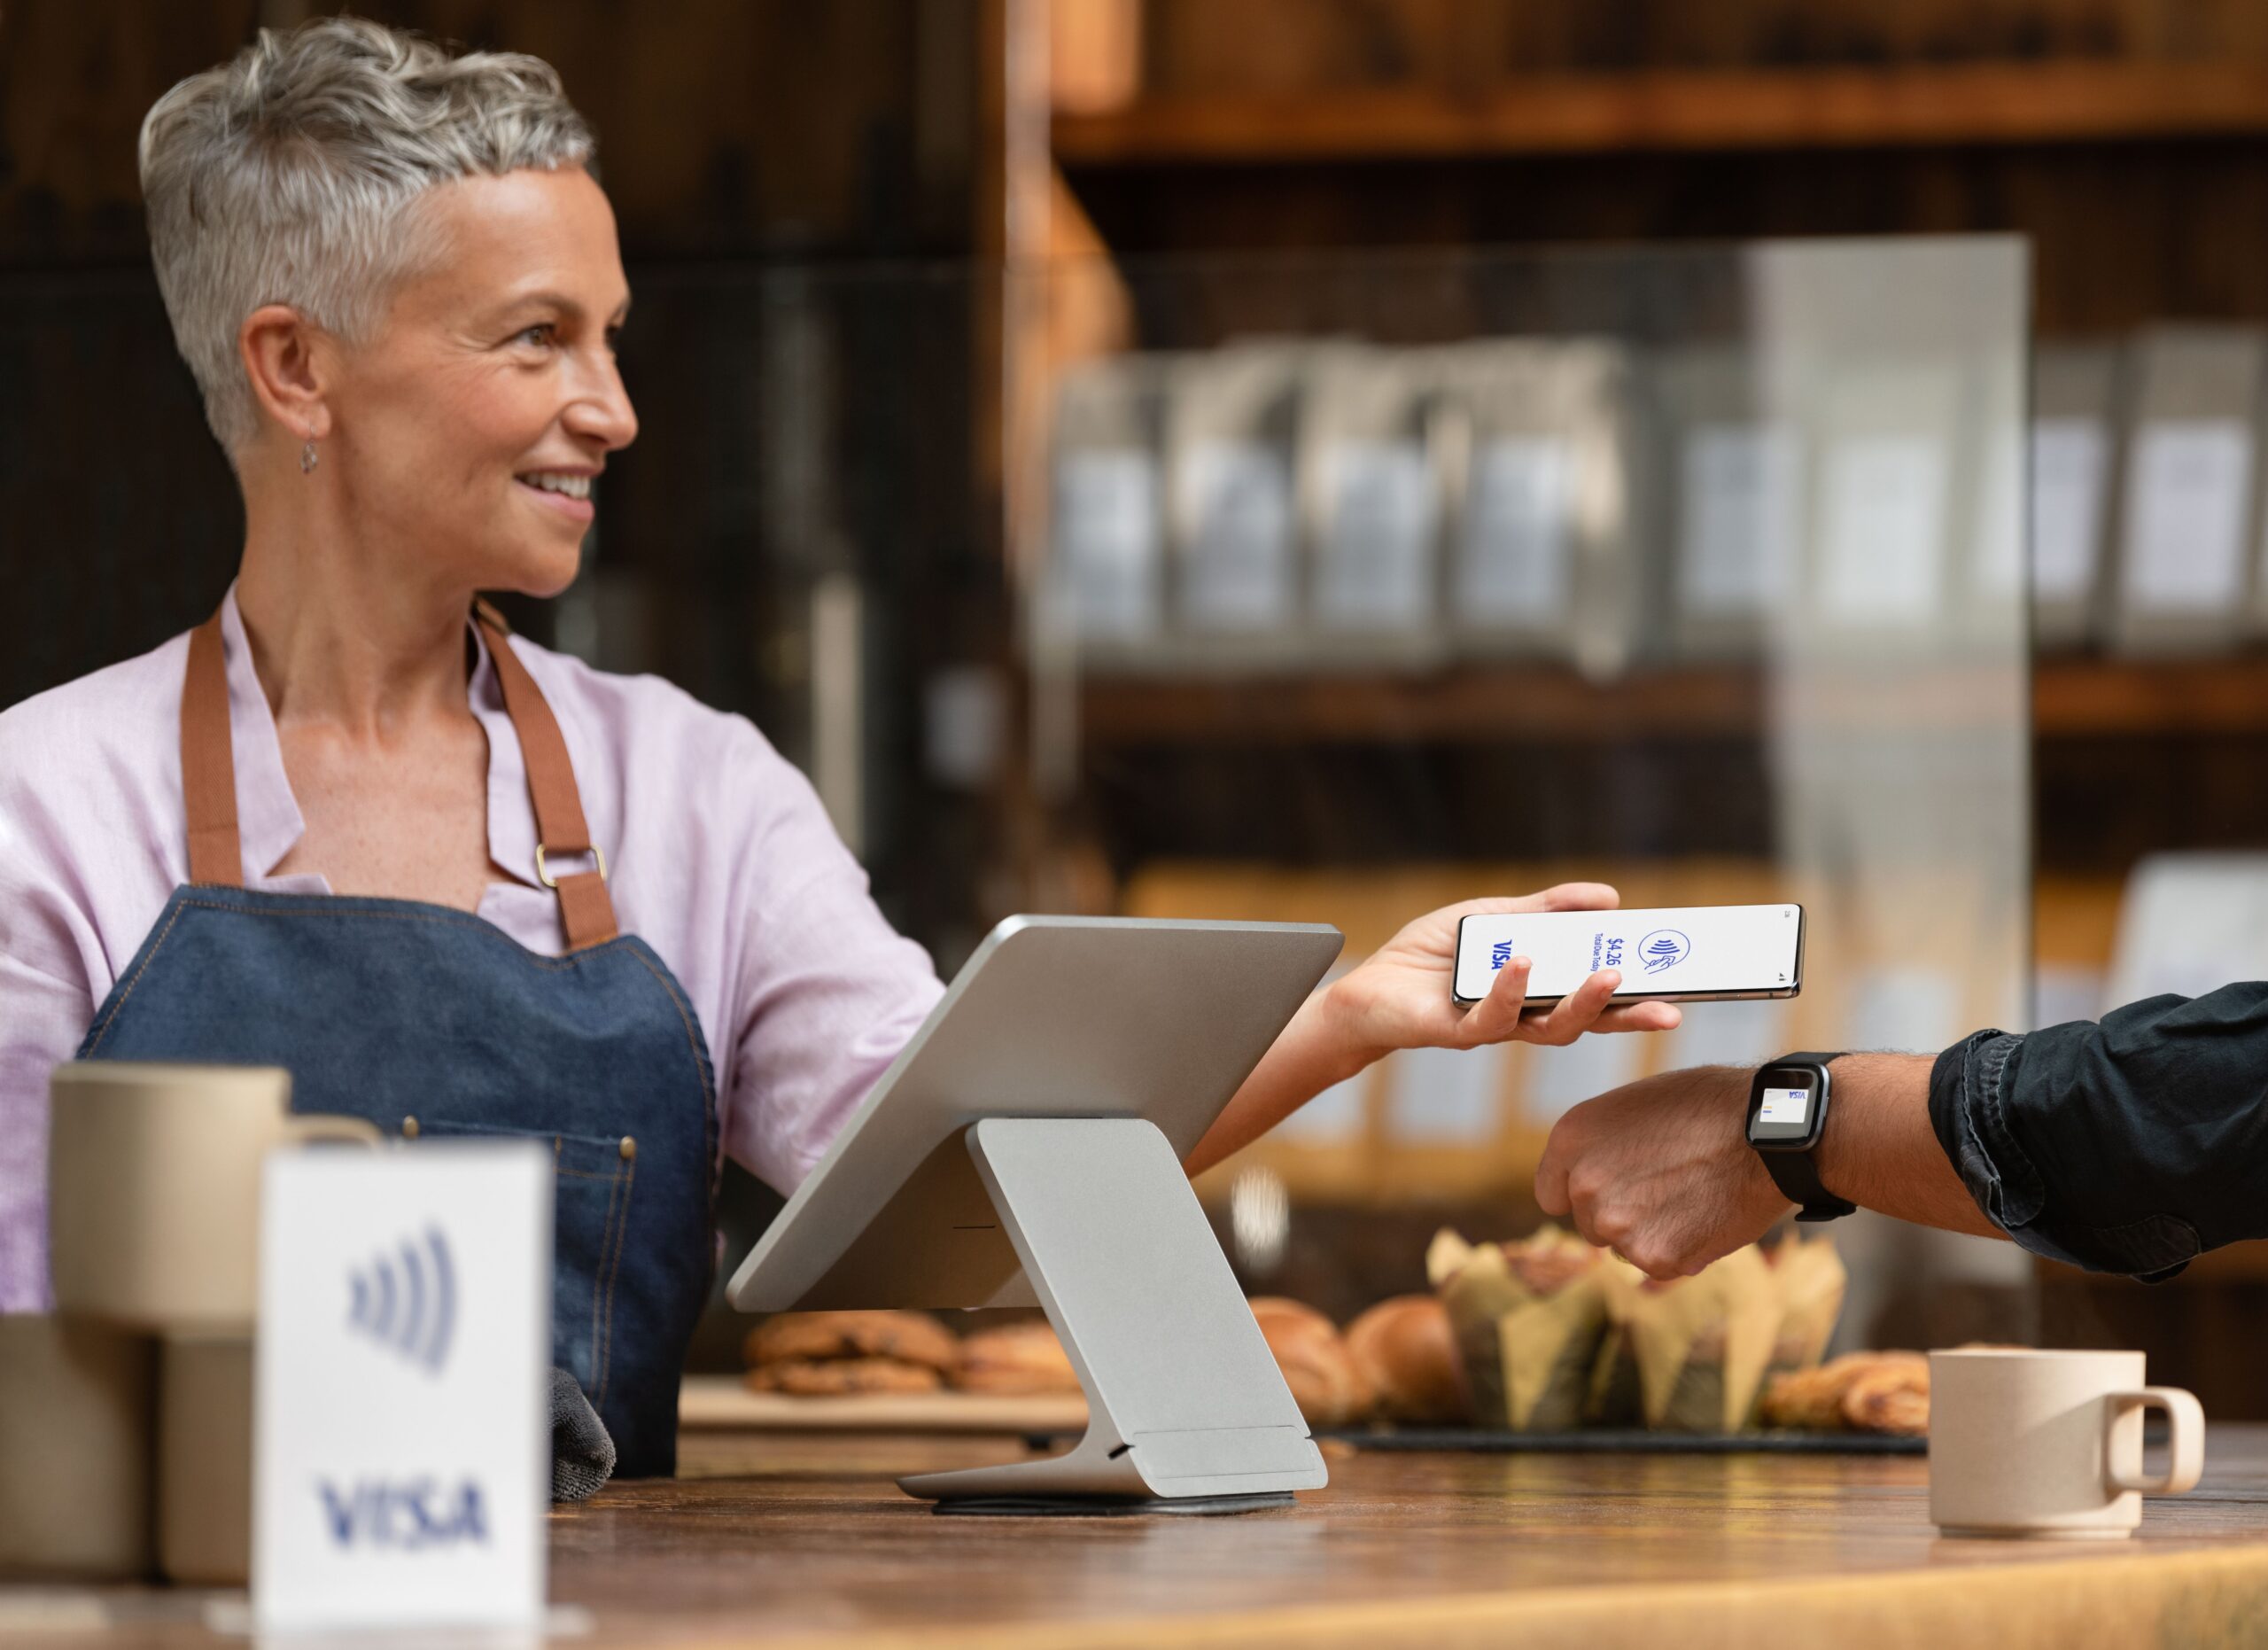 visa bezpieczne płatności bezgotówkowe transakcje karta płatnicza